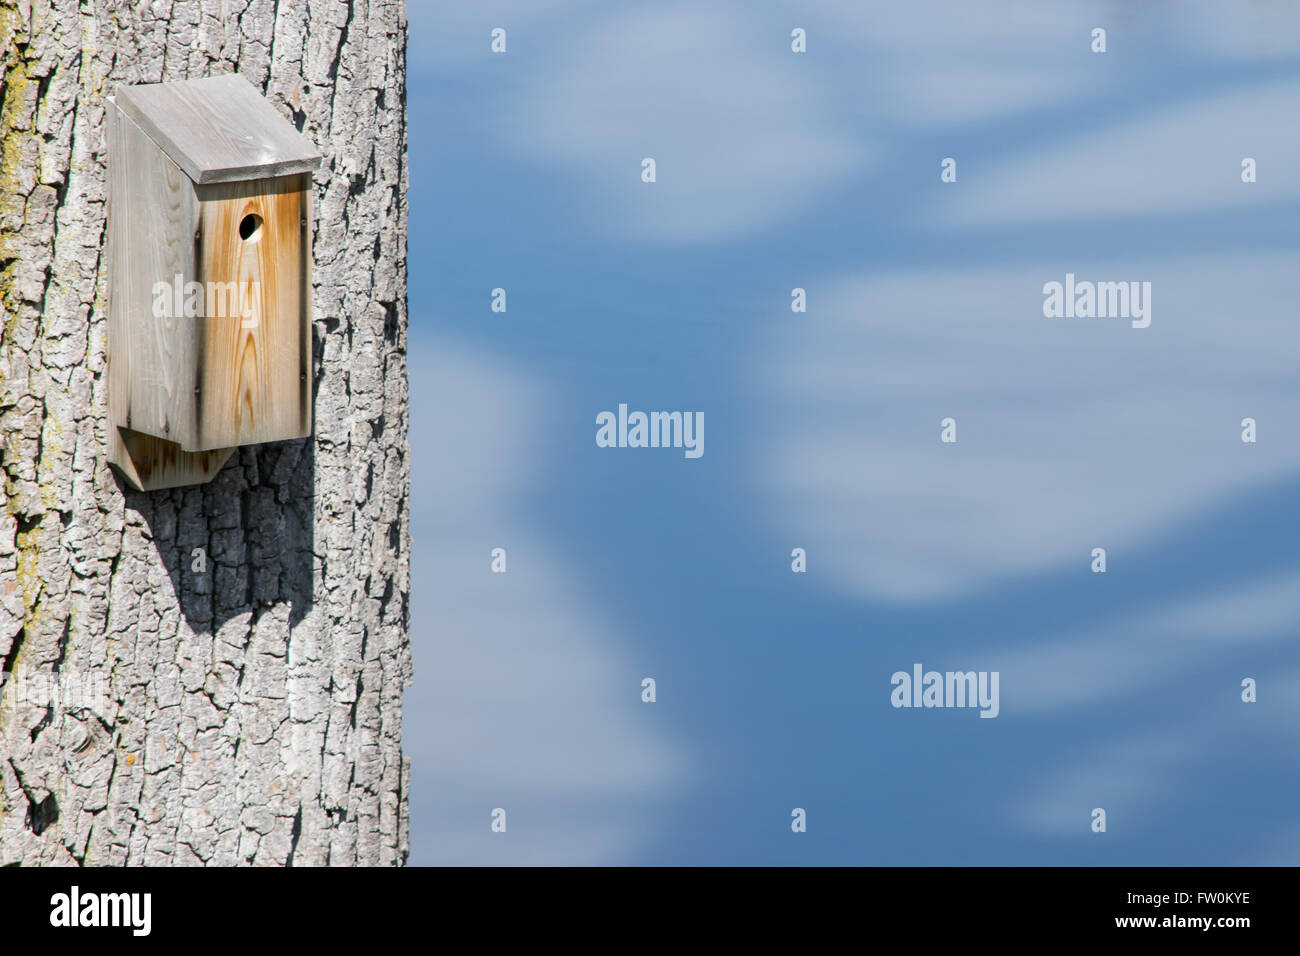 Bird Nesting Box nailed to a tree trunk. Stock Photo